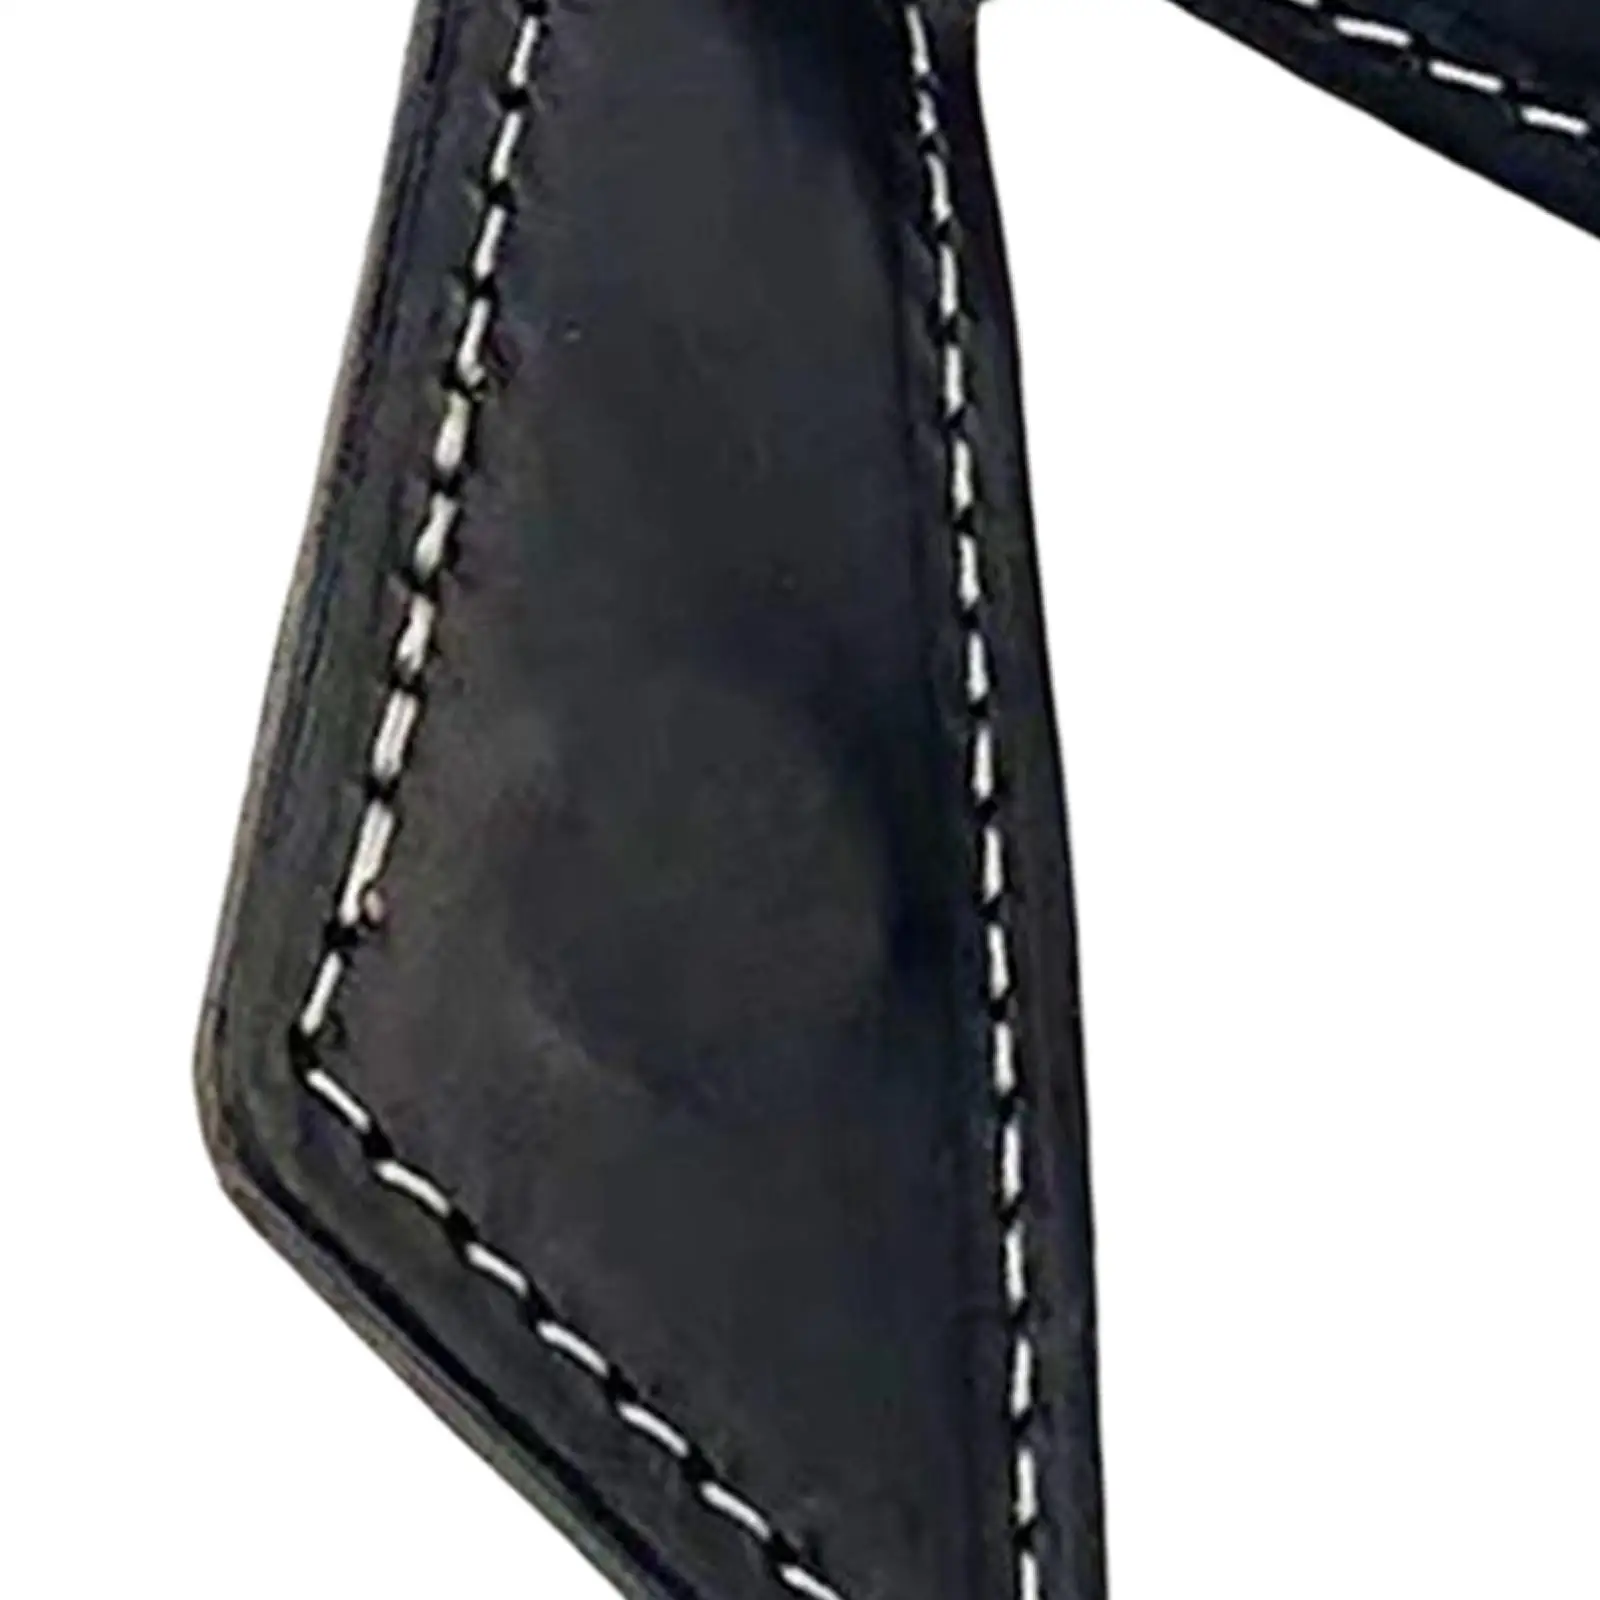 Magnetic Trouser Pocket Chalk Clip Hold Chalk Case Lightweight Pocket Clip